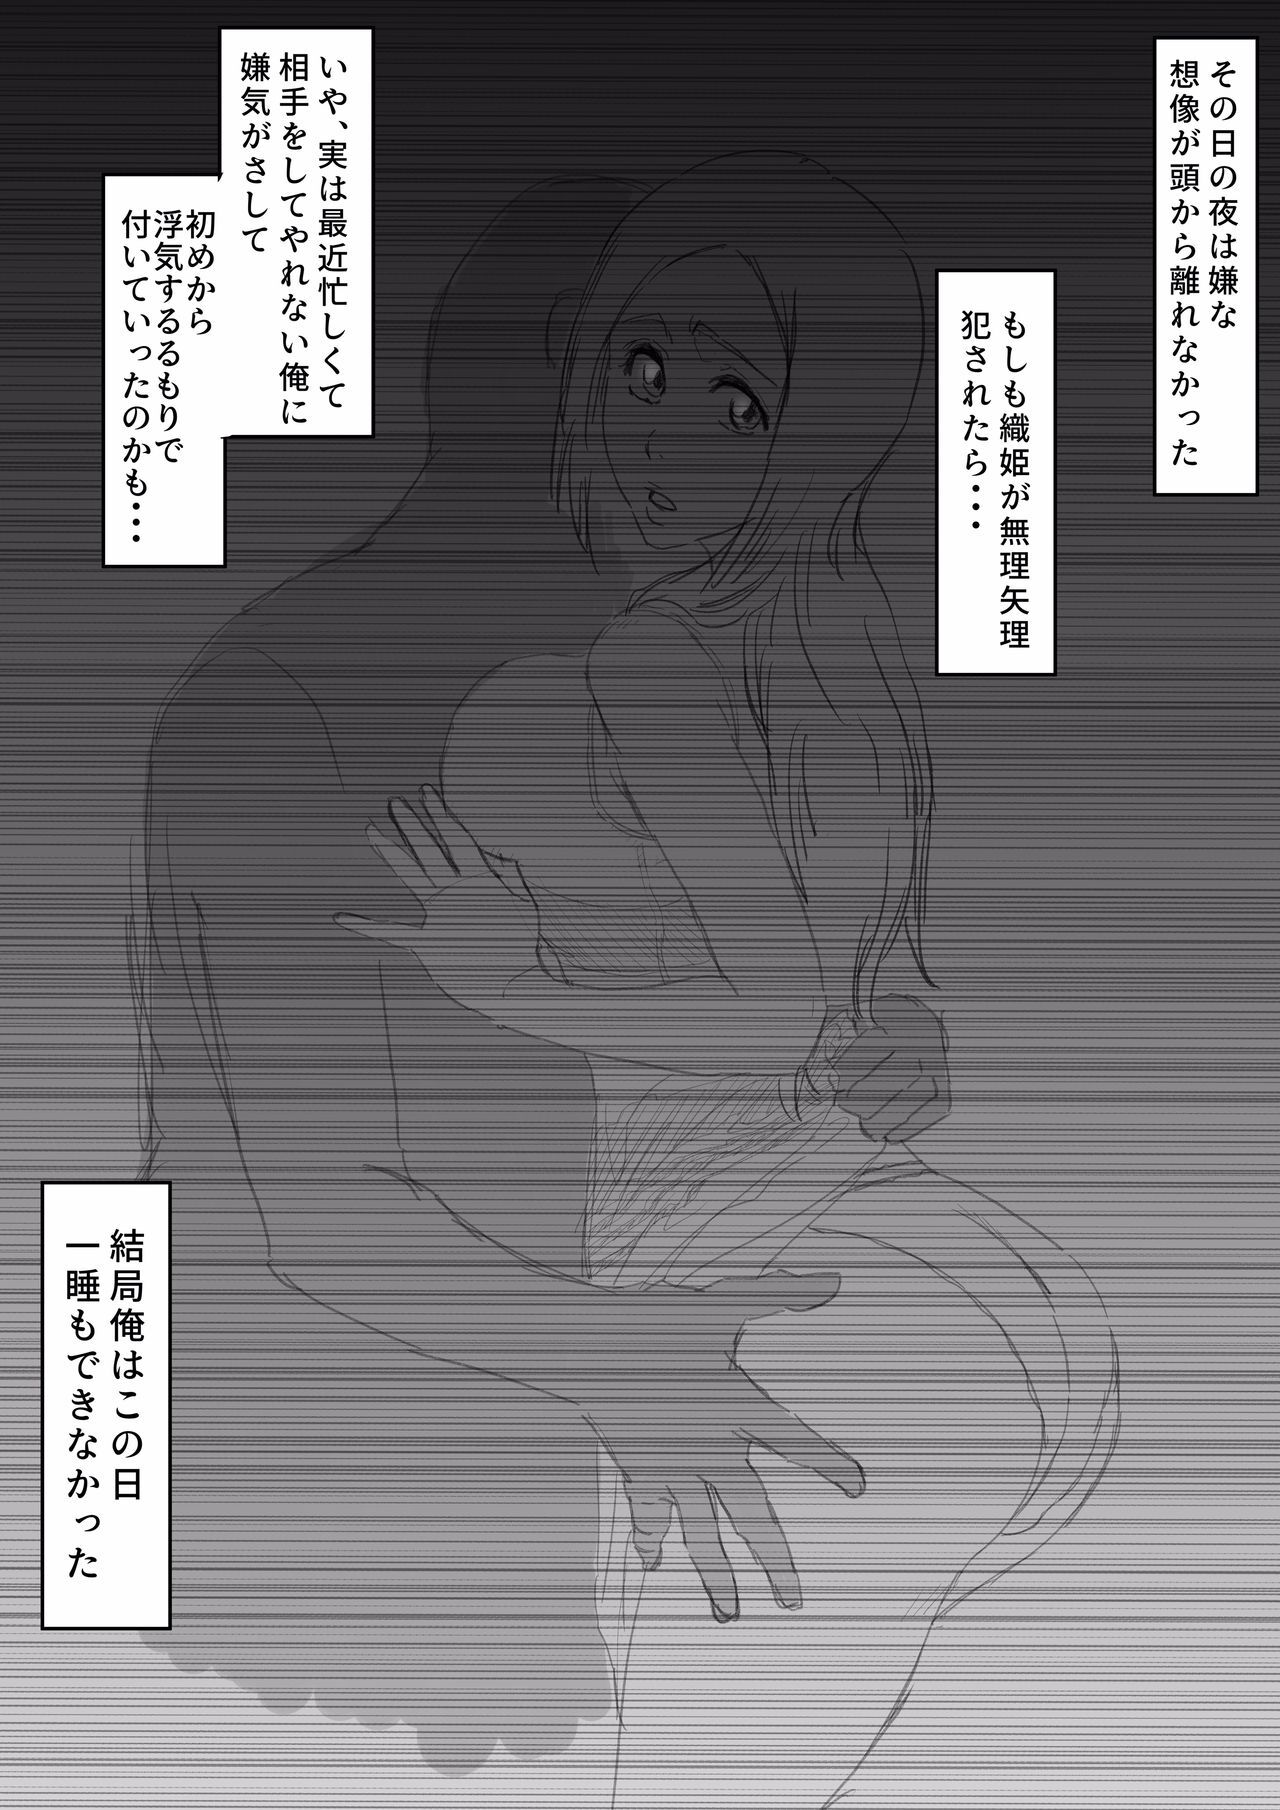 織姫寝取られ・・・？ - Bleach - Free Hentai Manga, Doujins & XXX